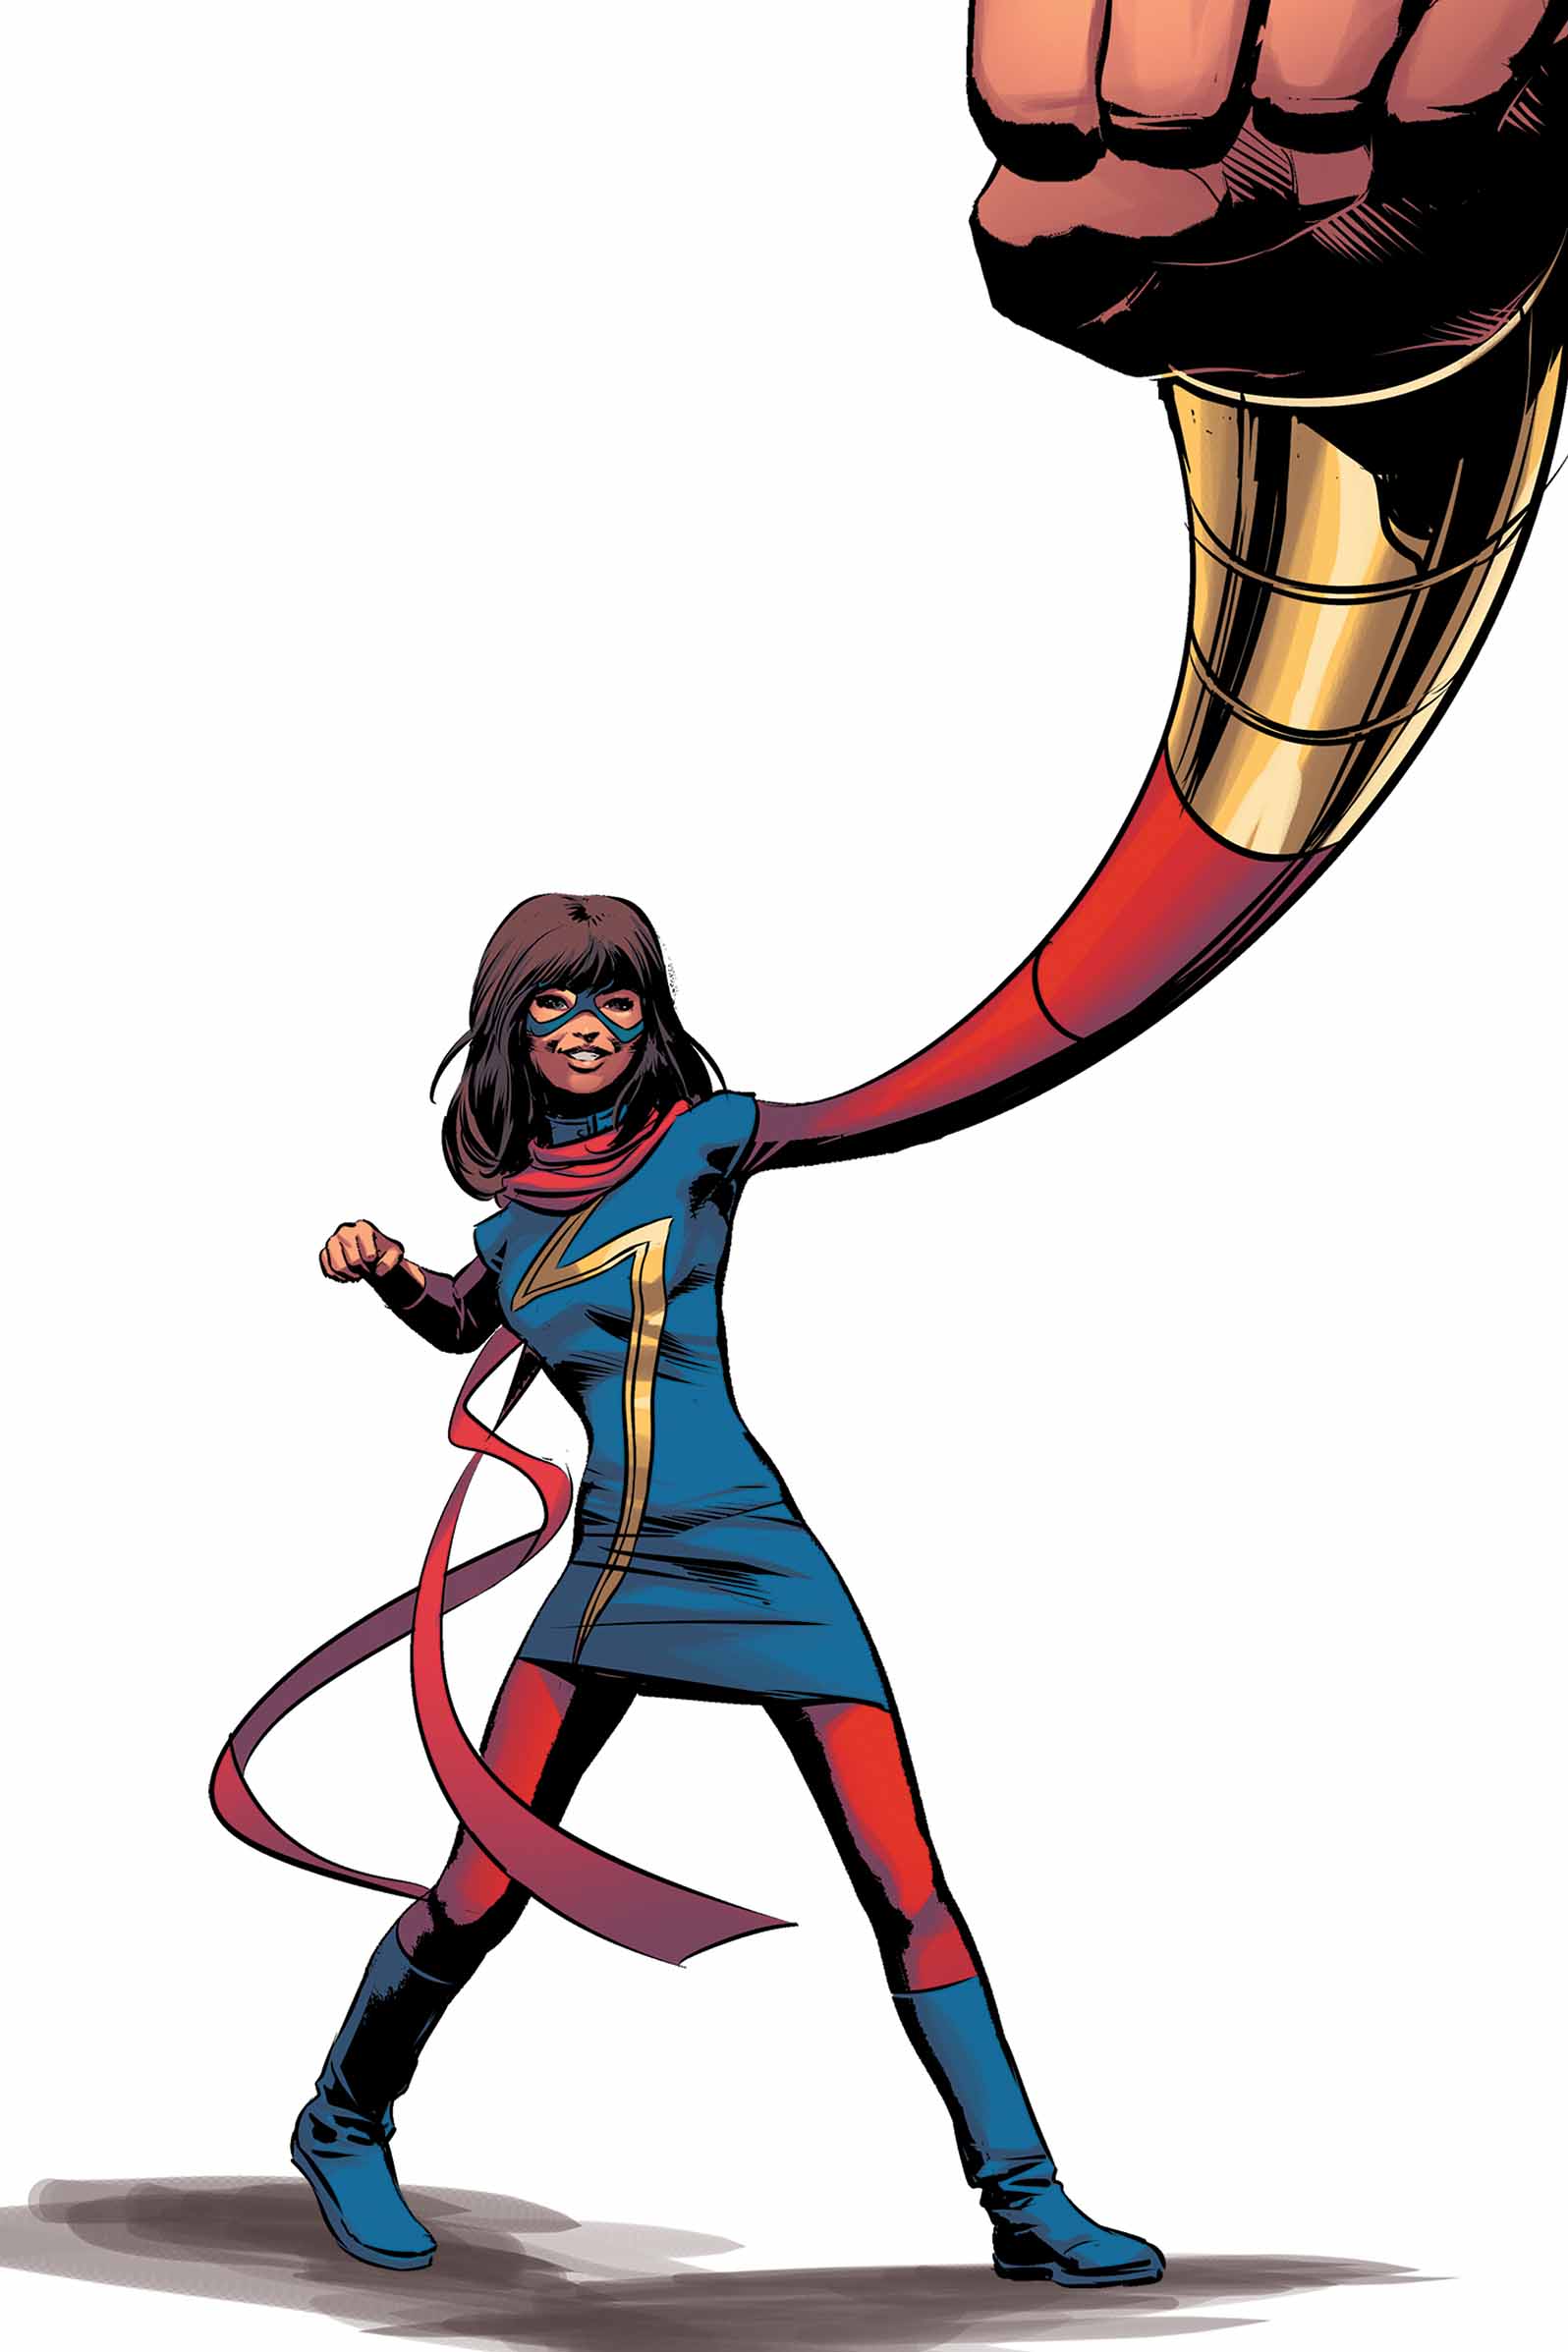 Ms. Marvel (2015) #12 (Deodato Teaser Variant)